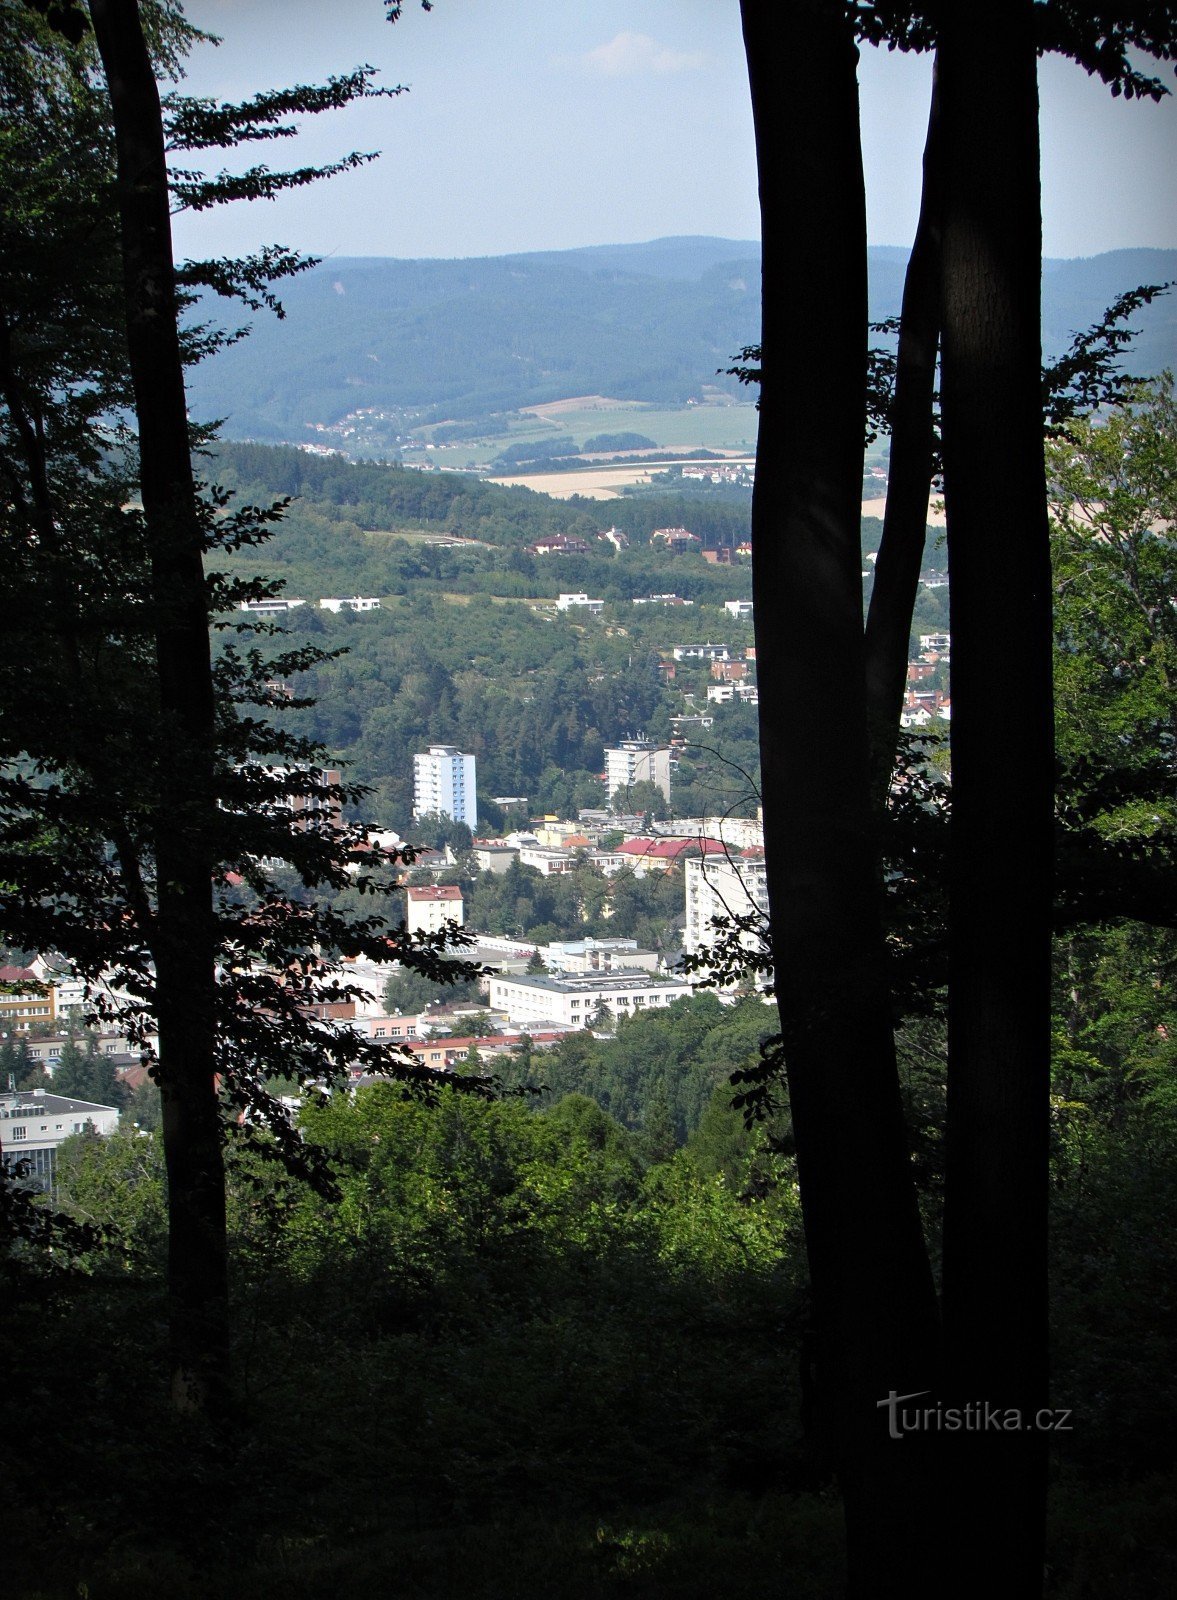 Zlín - begränsad utsikt från Barabáš